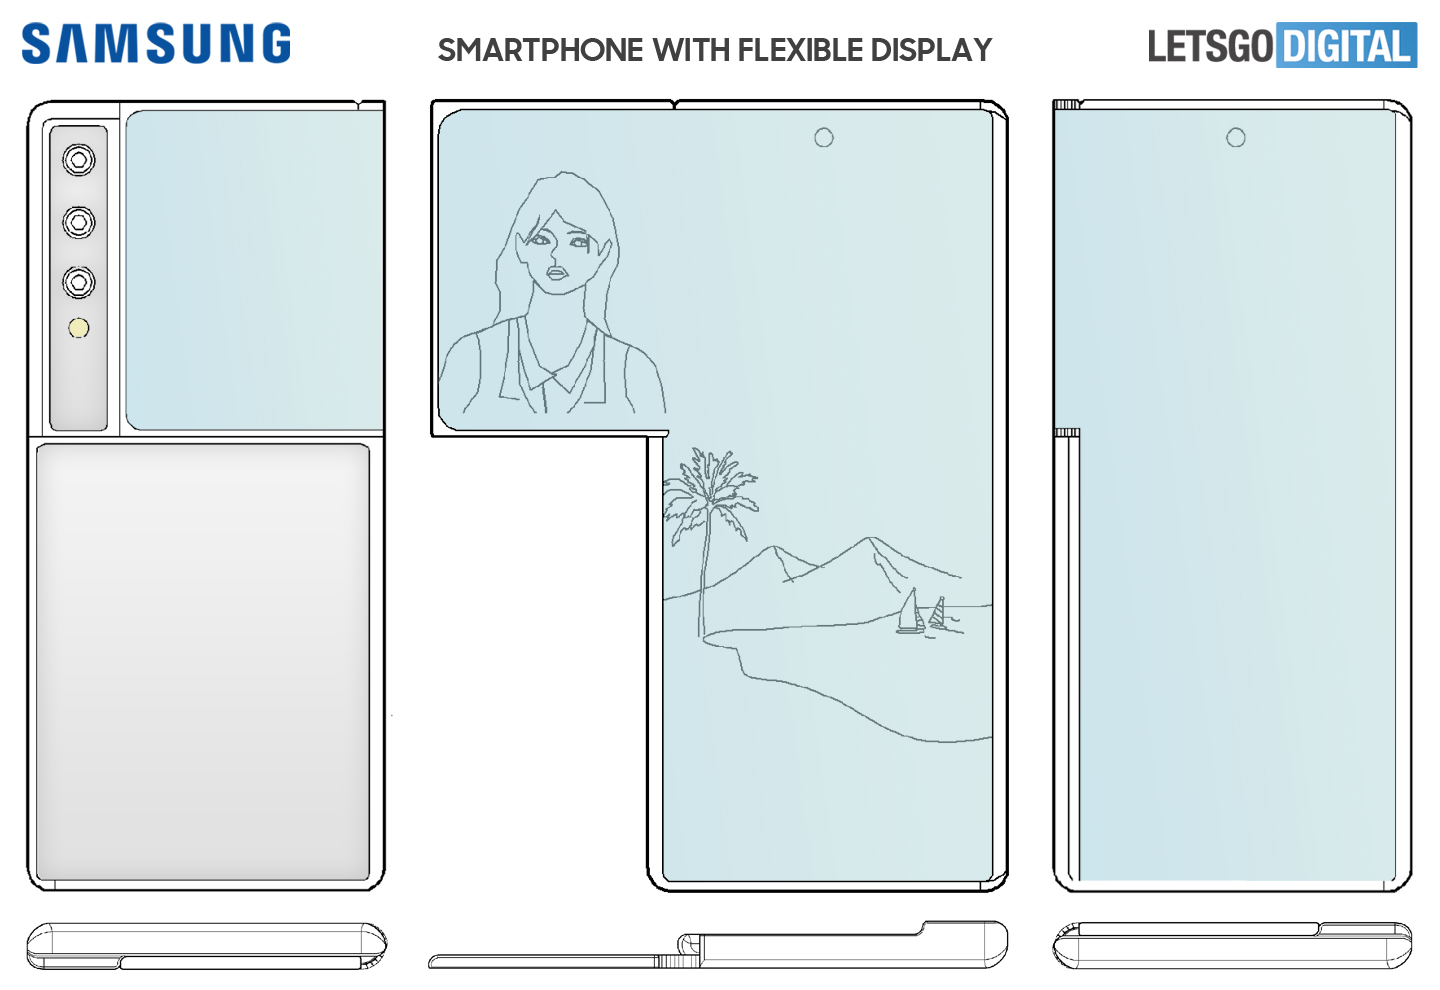 Brevetto di Samsung: lo smartphone con display flessibile